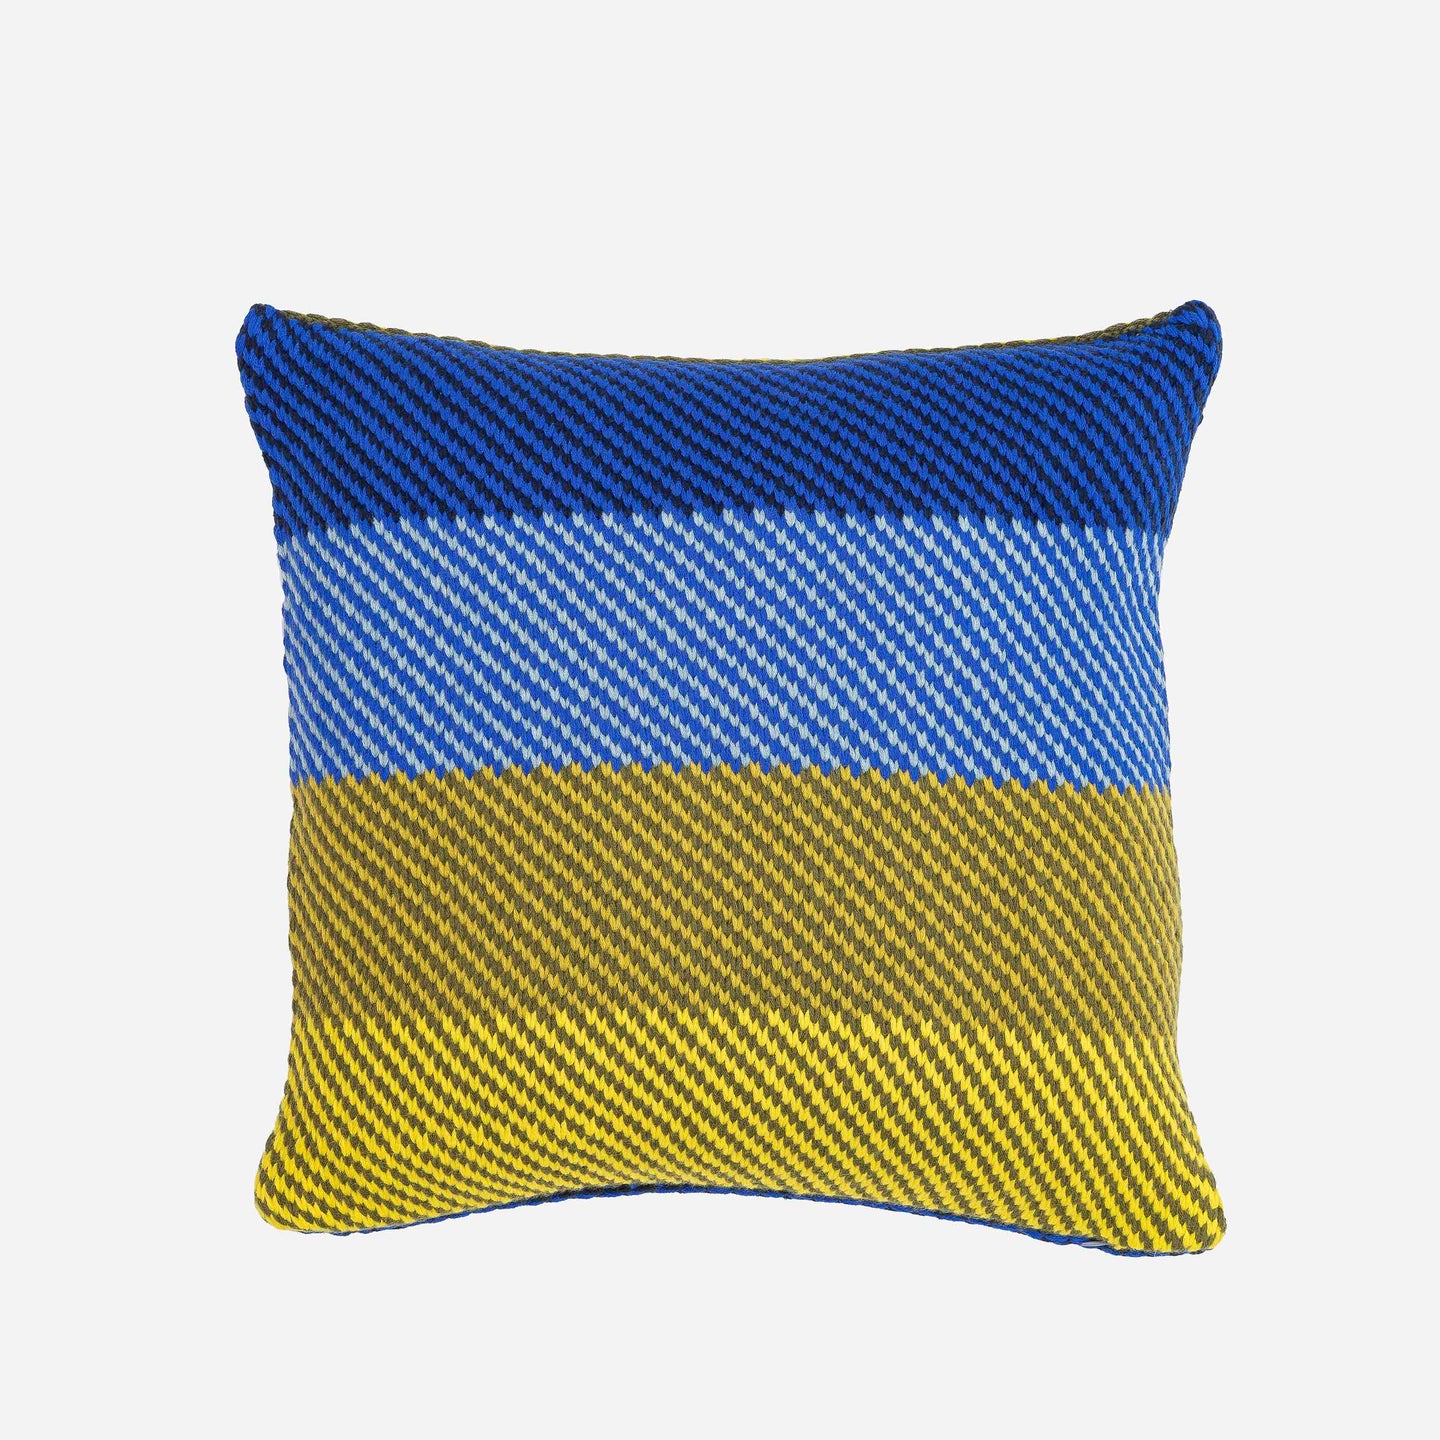 Slant Stripes Diagonal Knit Pillow Cover Gradient